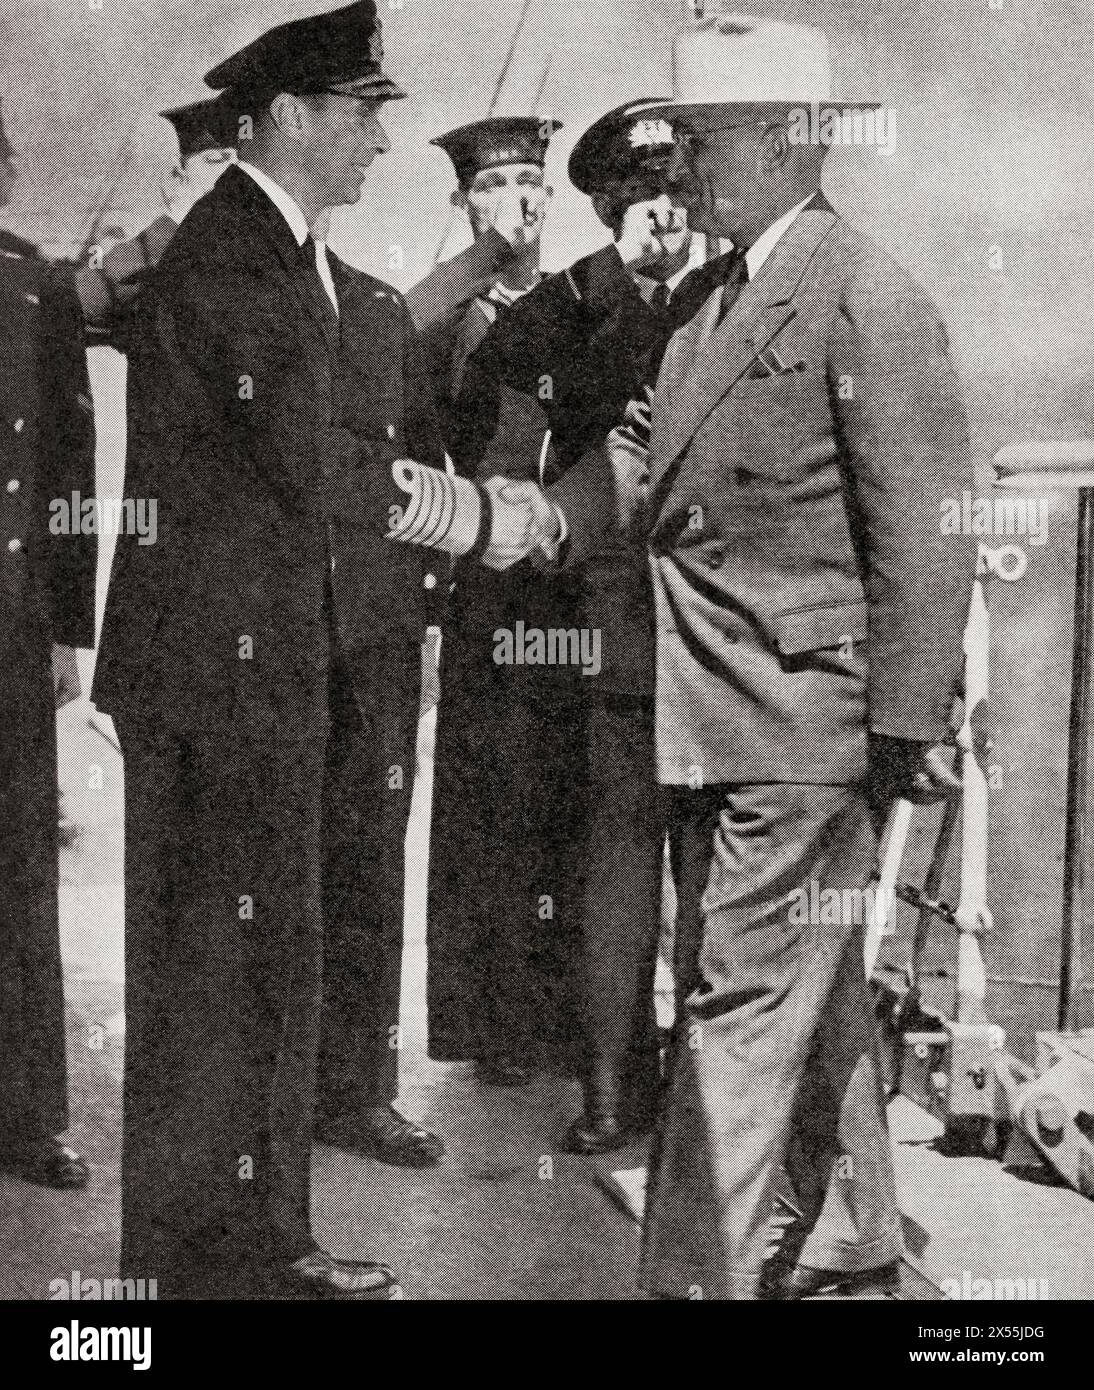 La réunion du roi George VI d'Angleterre et du président Truman à bord du croiseur de bataille britannique HMS 'Renown', Plymouth, le 2 août 1945. George VI, 1895 – 1952. Roi du Royaume-Uni. Harry S. Truman, 1884 – 1972. 33e président des États-Unis d'Amérique. De la Guerre en images, sixième année. Banque D'Images